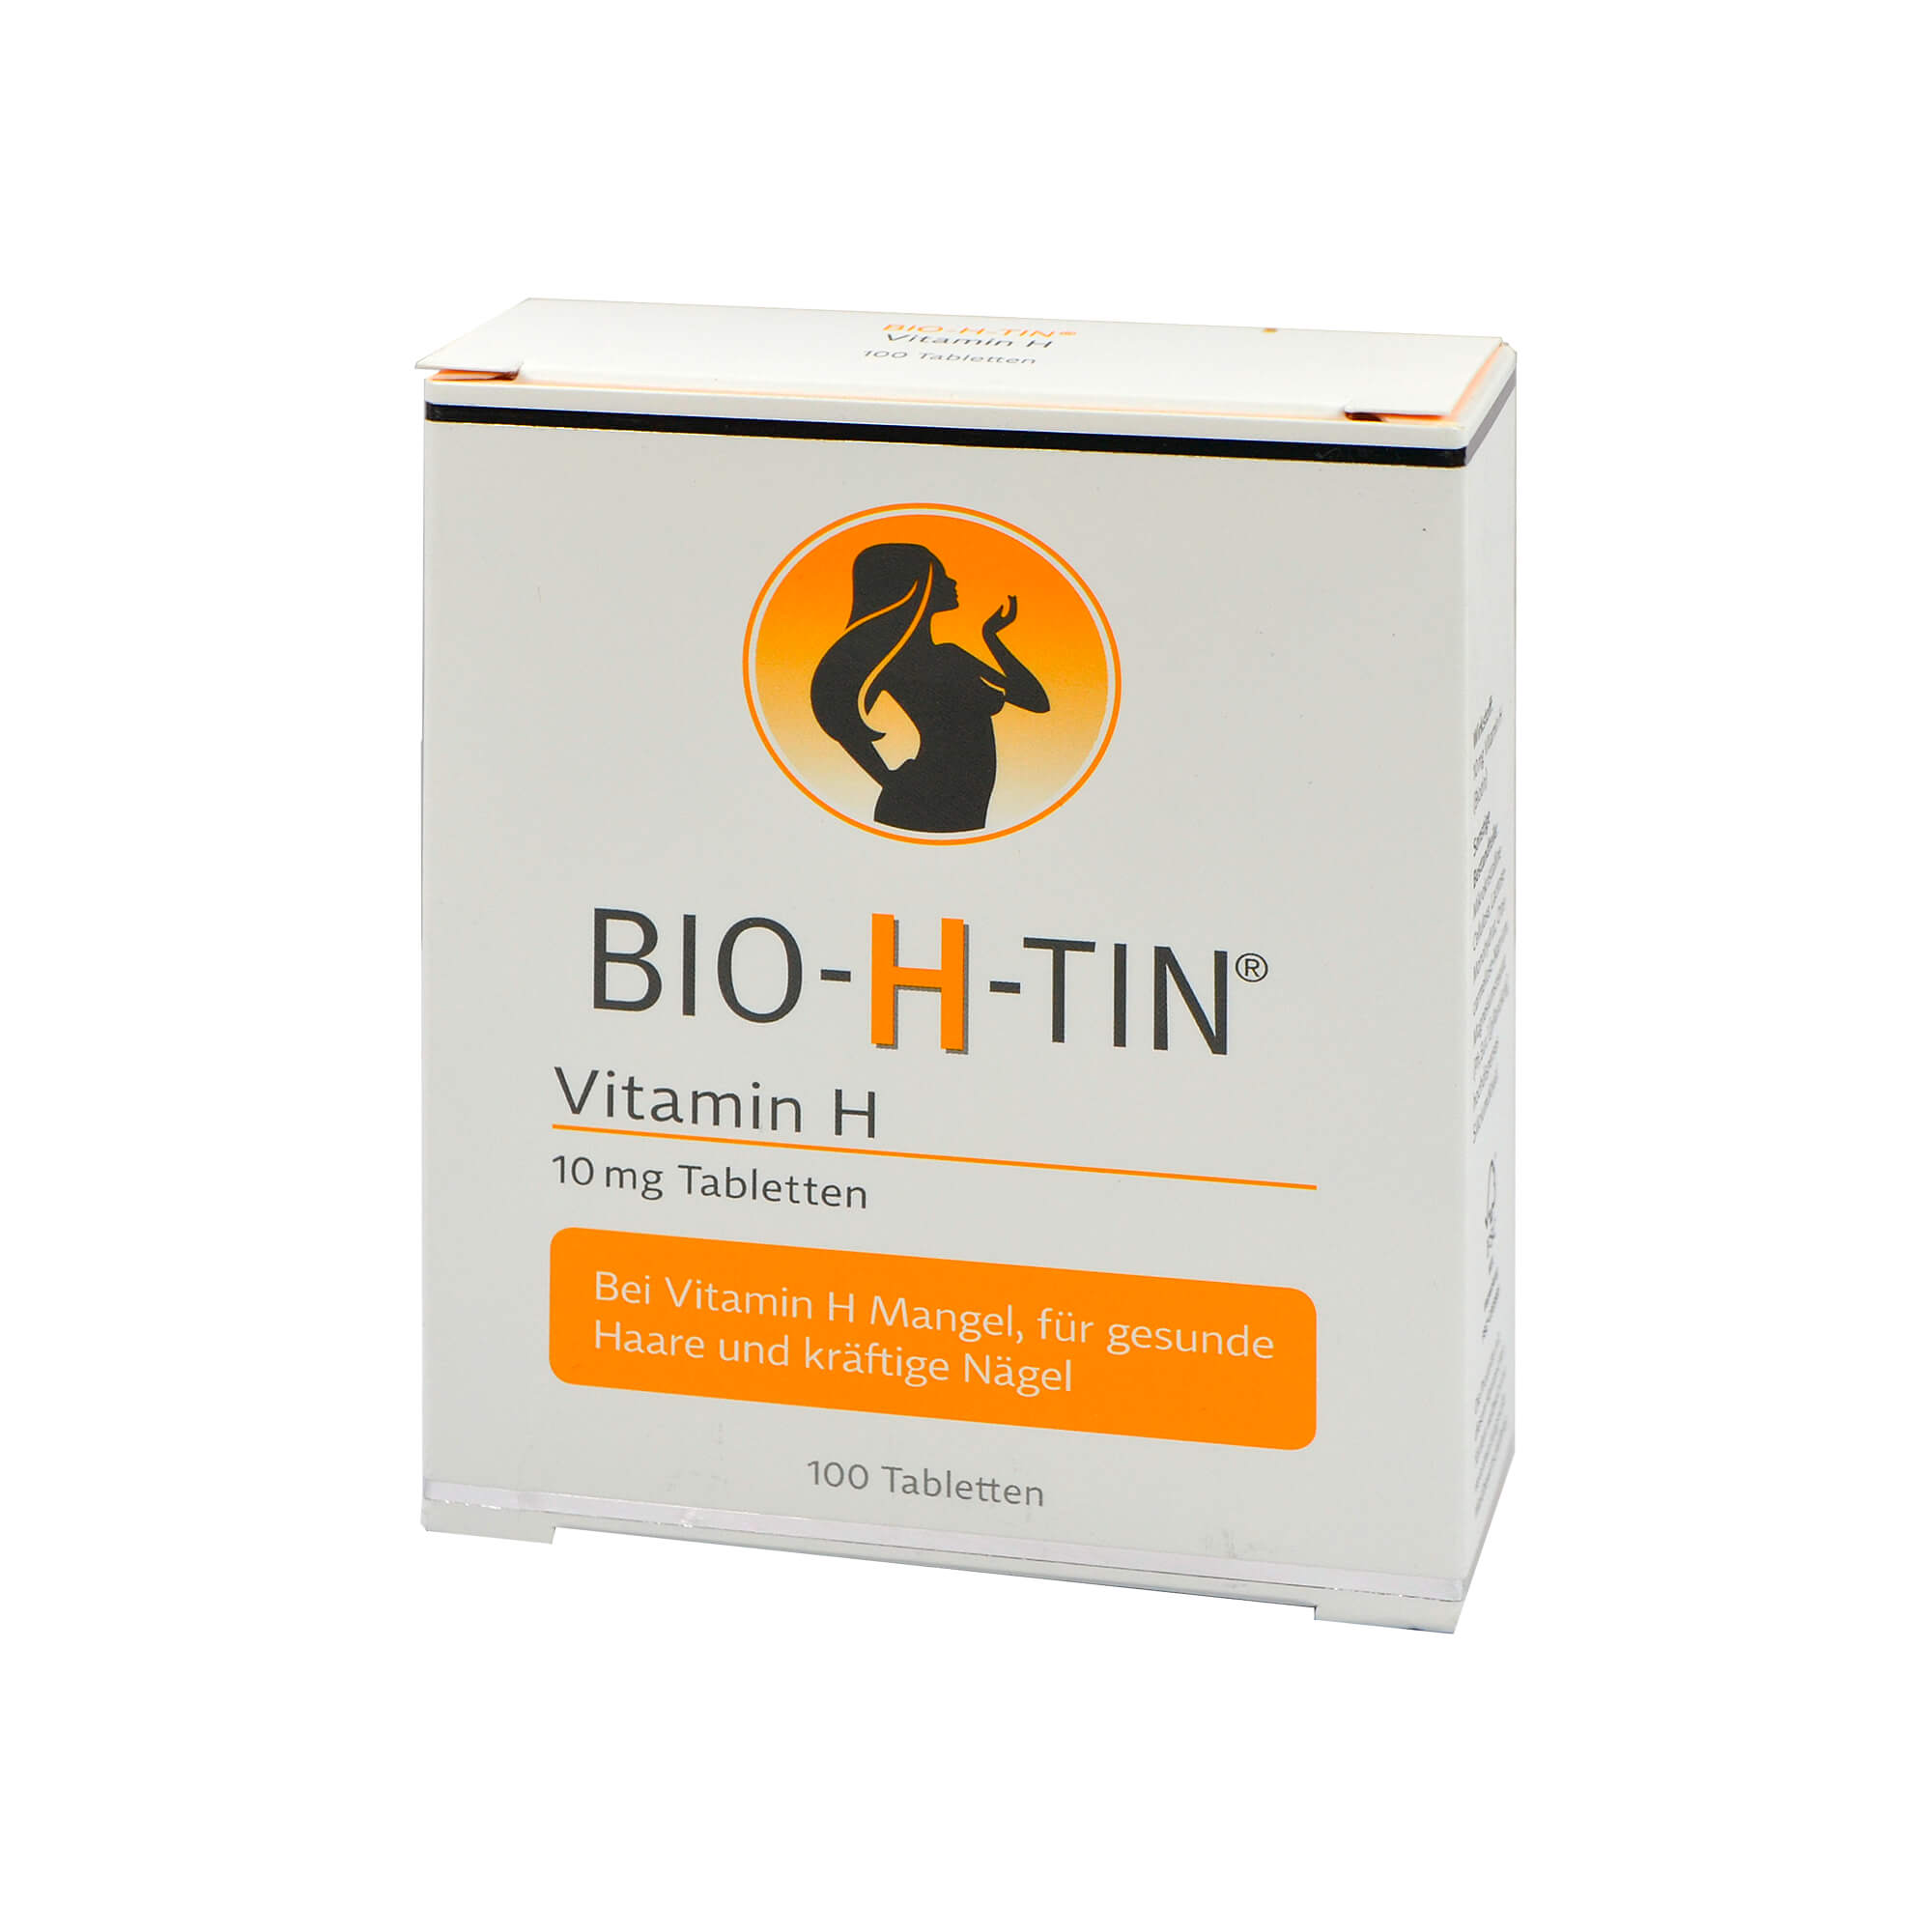 zur Vorbeugung und Behandlung eines Biotin-Mangels und zur Behandlung eines Biotin-Mangels beim sehr seltenen Biotin-abhängigen, multiplen Carboxylasemangel.